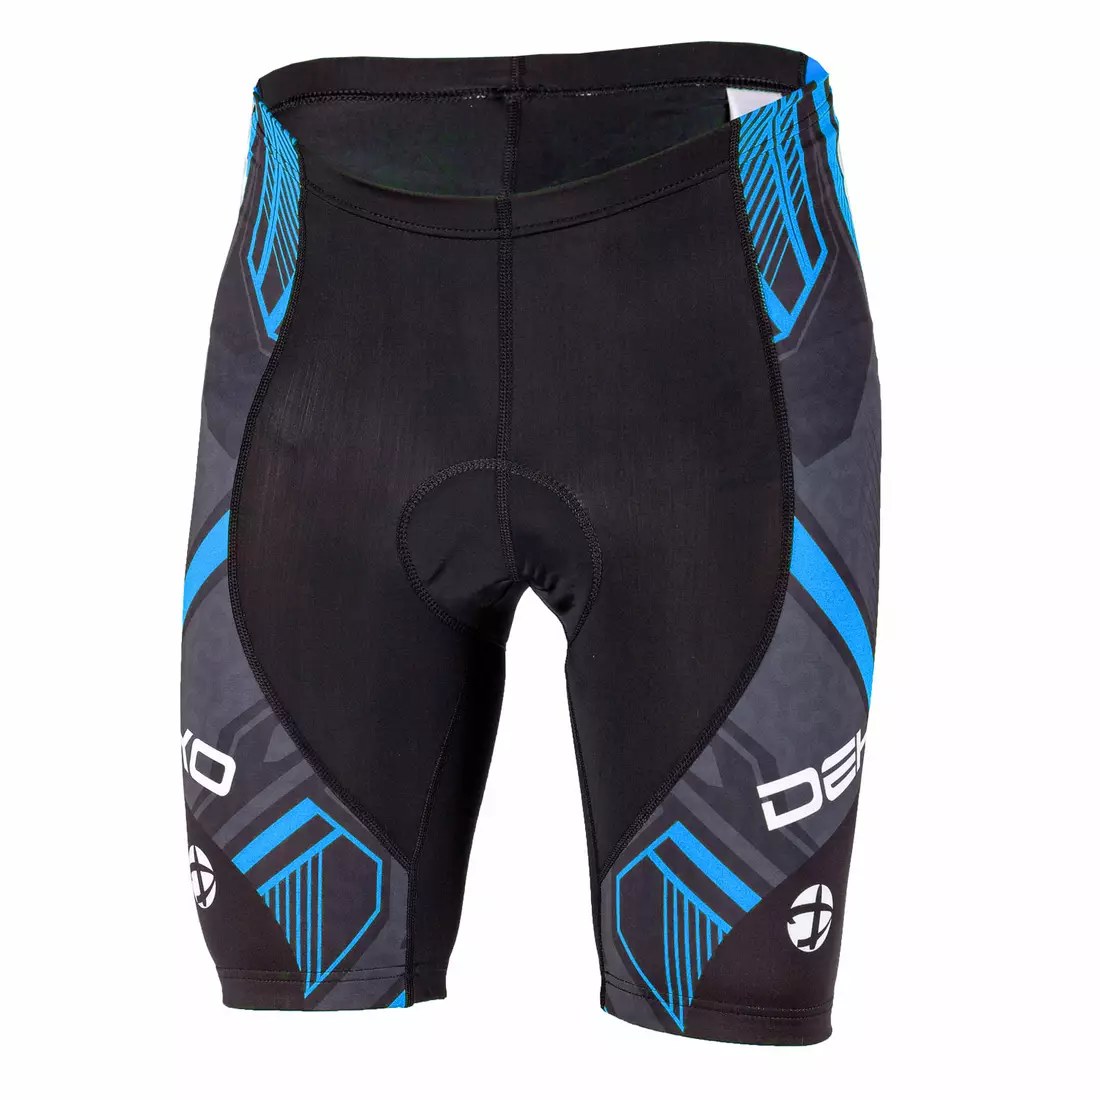 DEKO men's cycling shorts GEL blue DK-2020-005